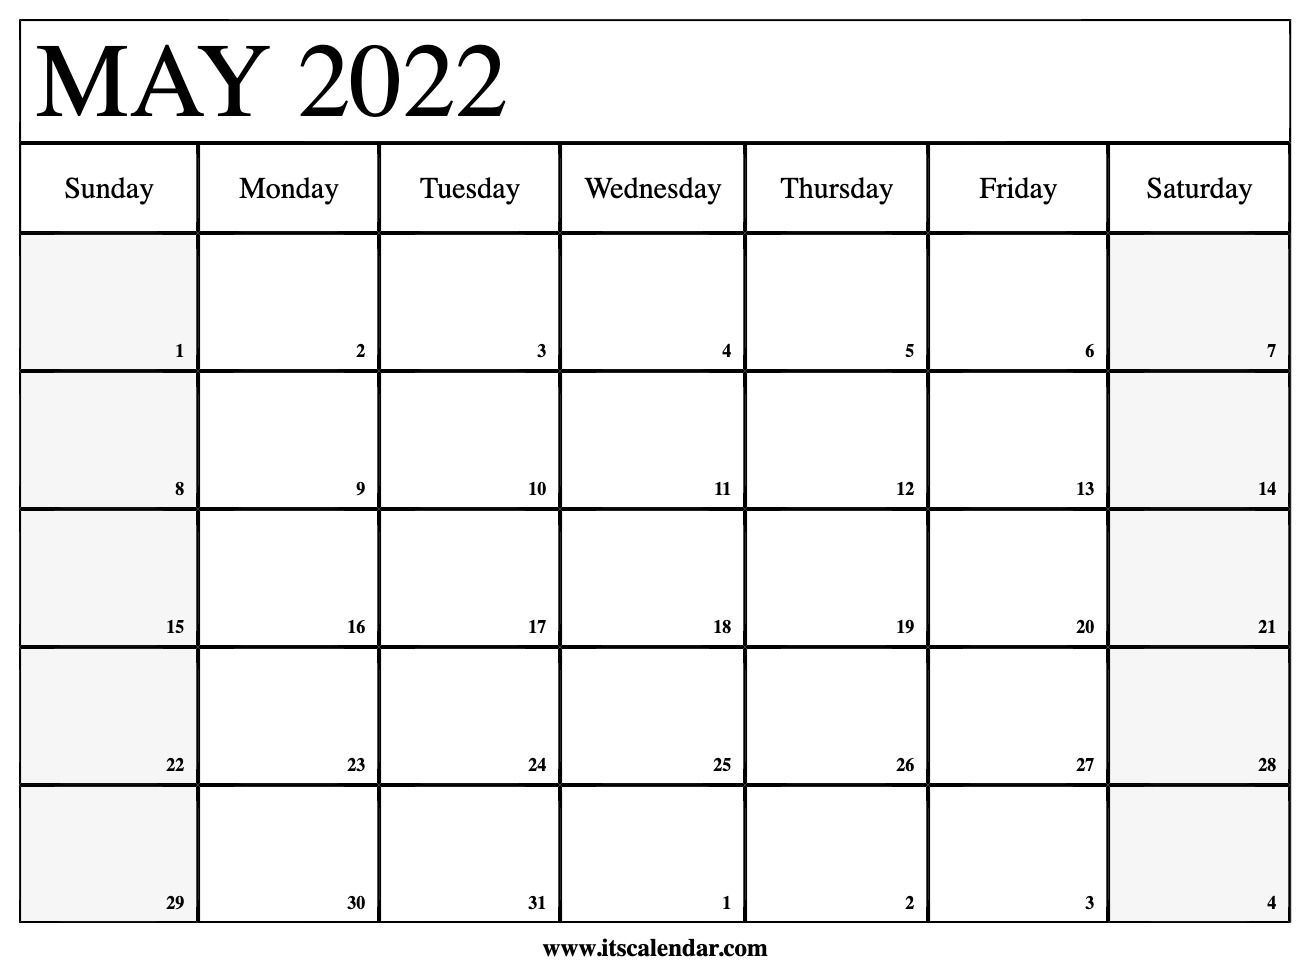 Mt Arlington Public School 2022 Calendar May Calendar 2022